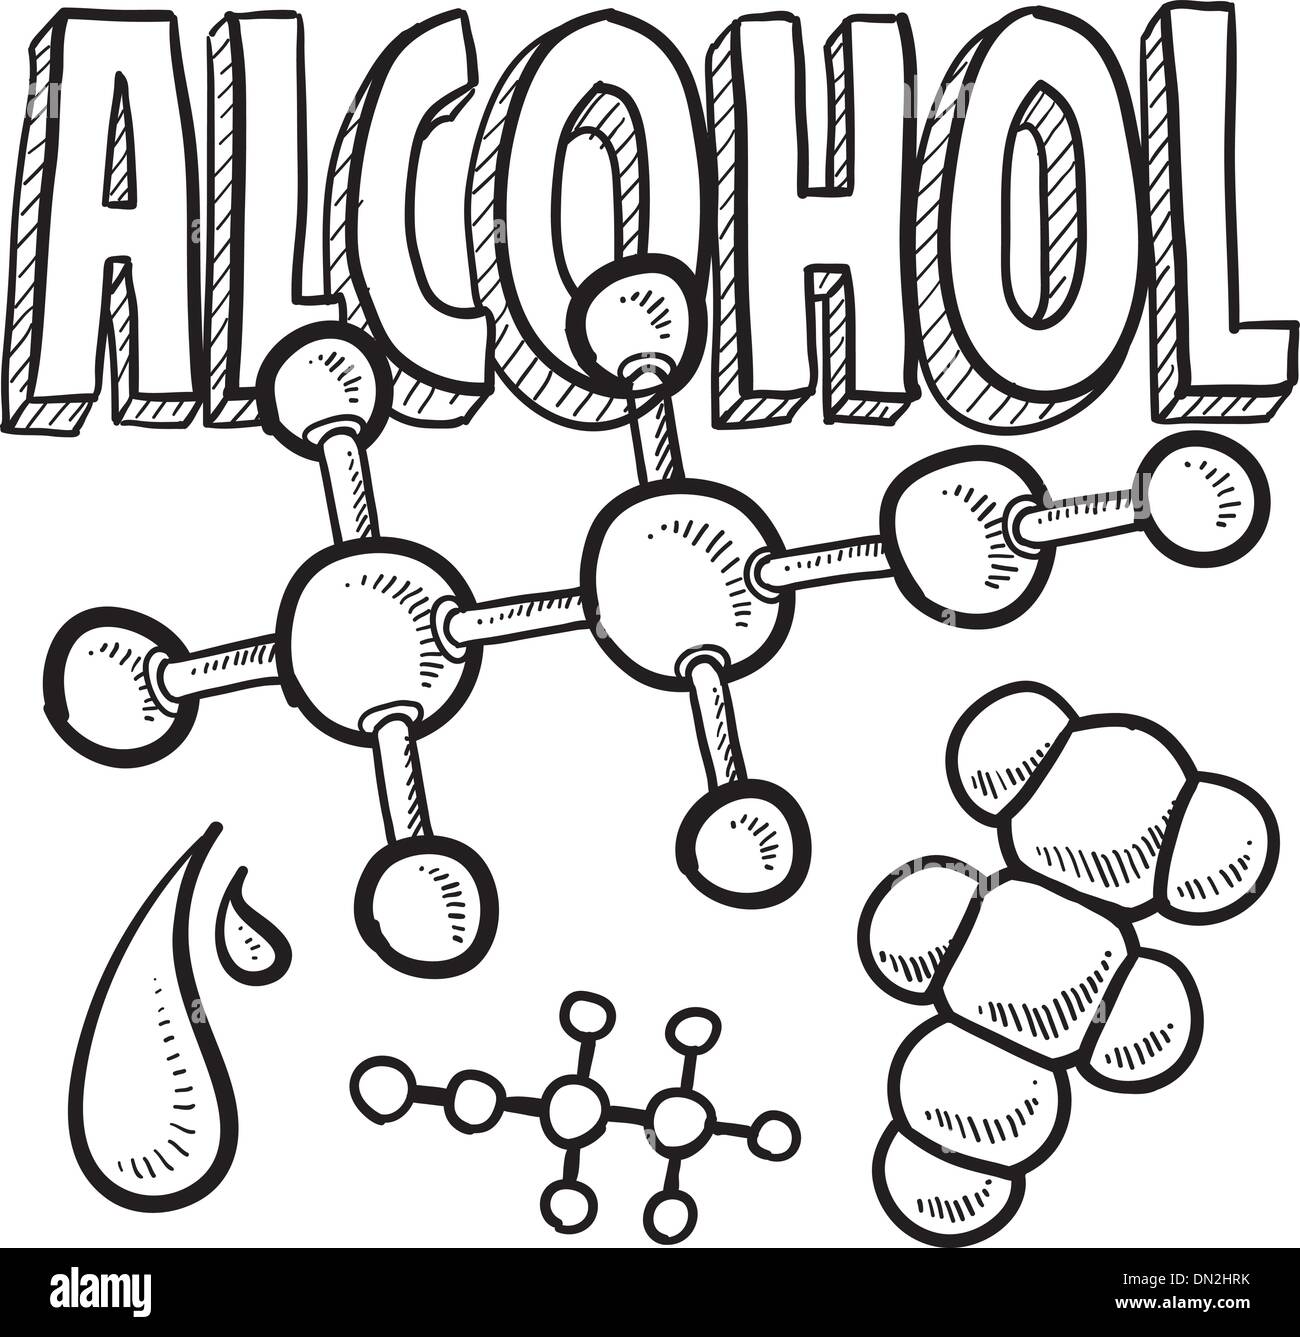 Alkohol-Molekül Wissenschaft Abbildung Stock Vektor